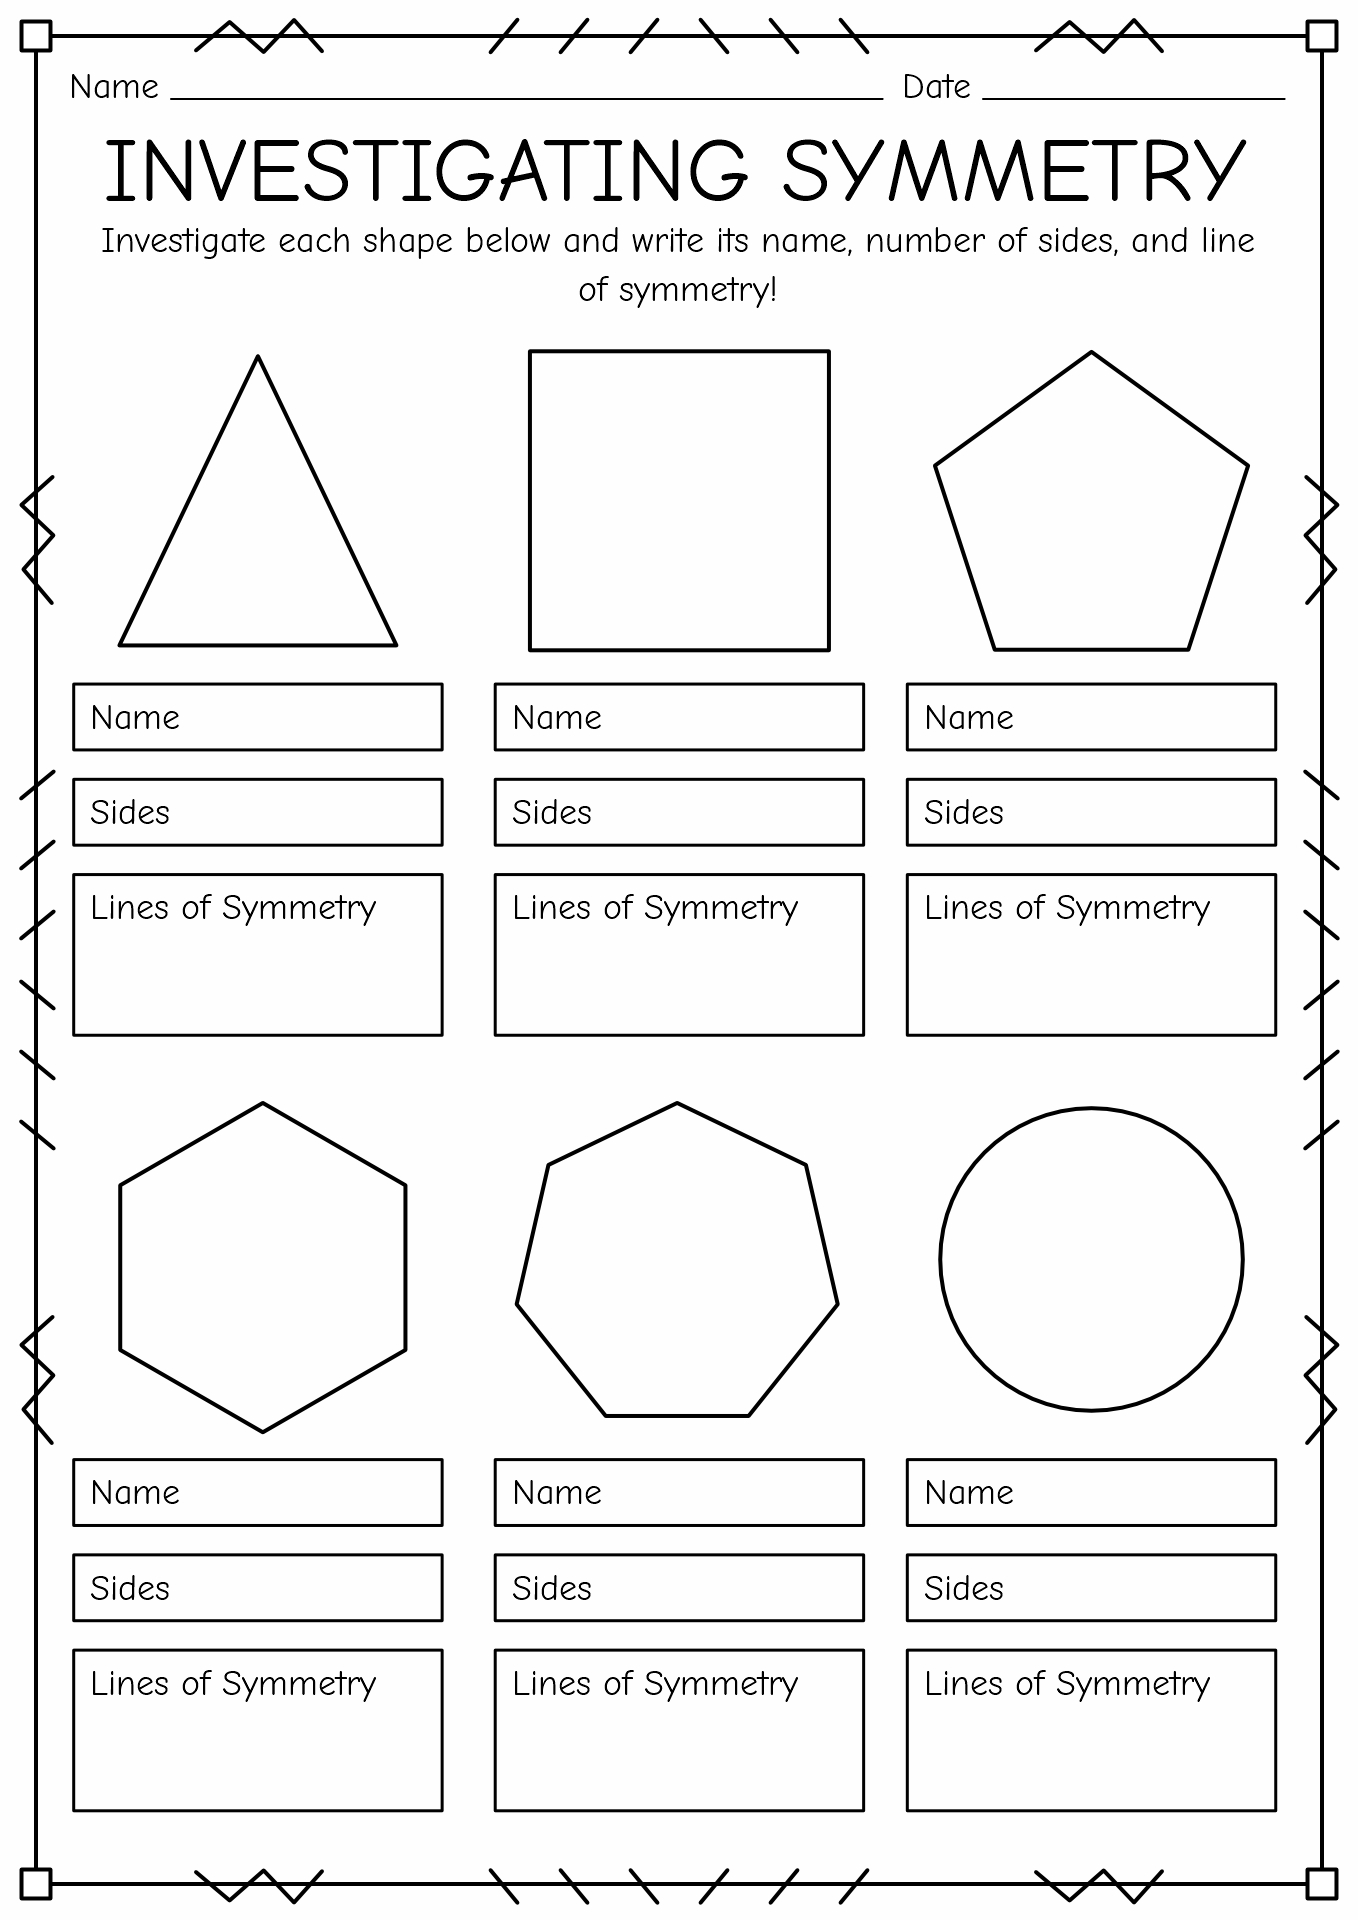 Line Symmetry Worksheets Image